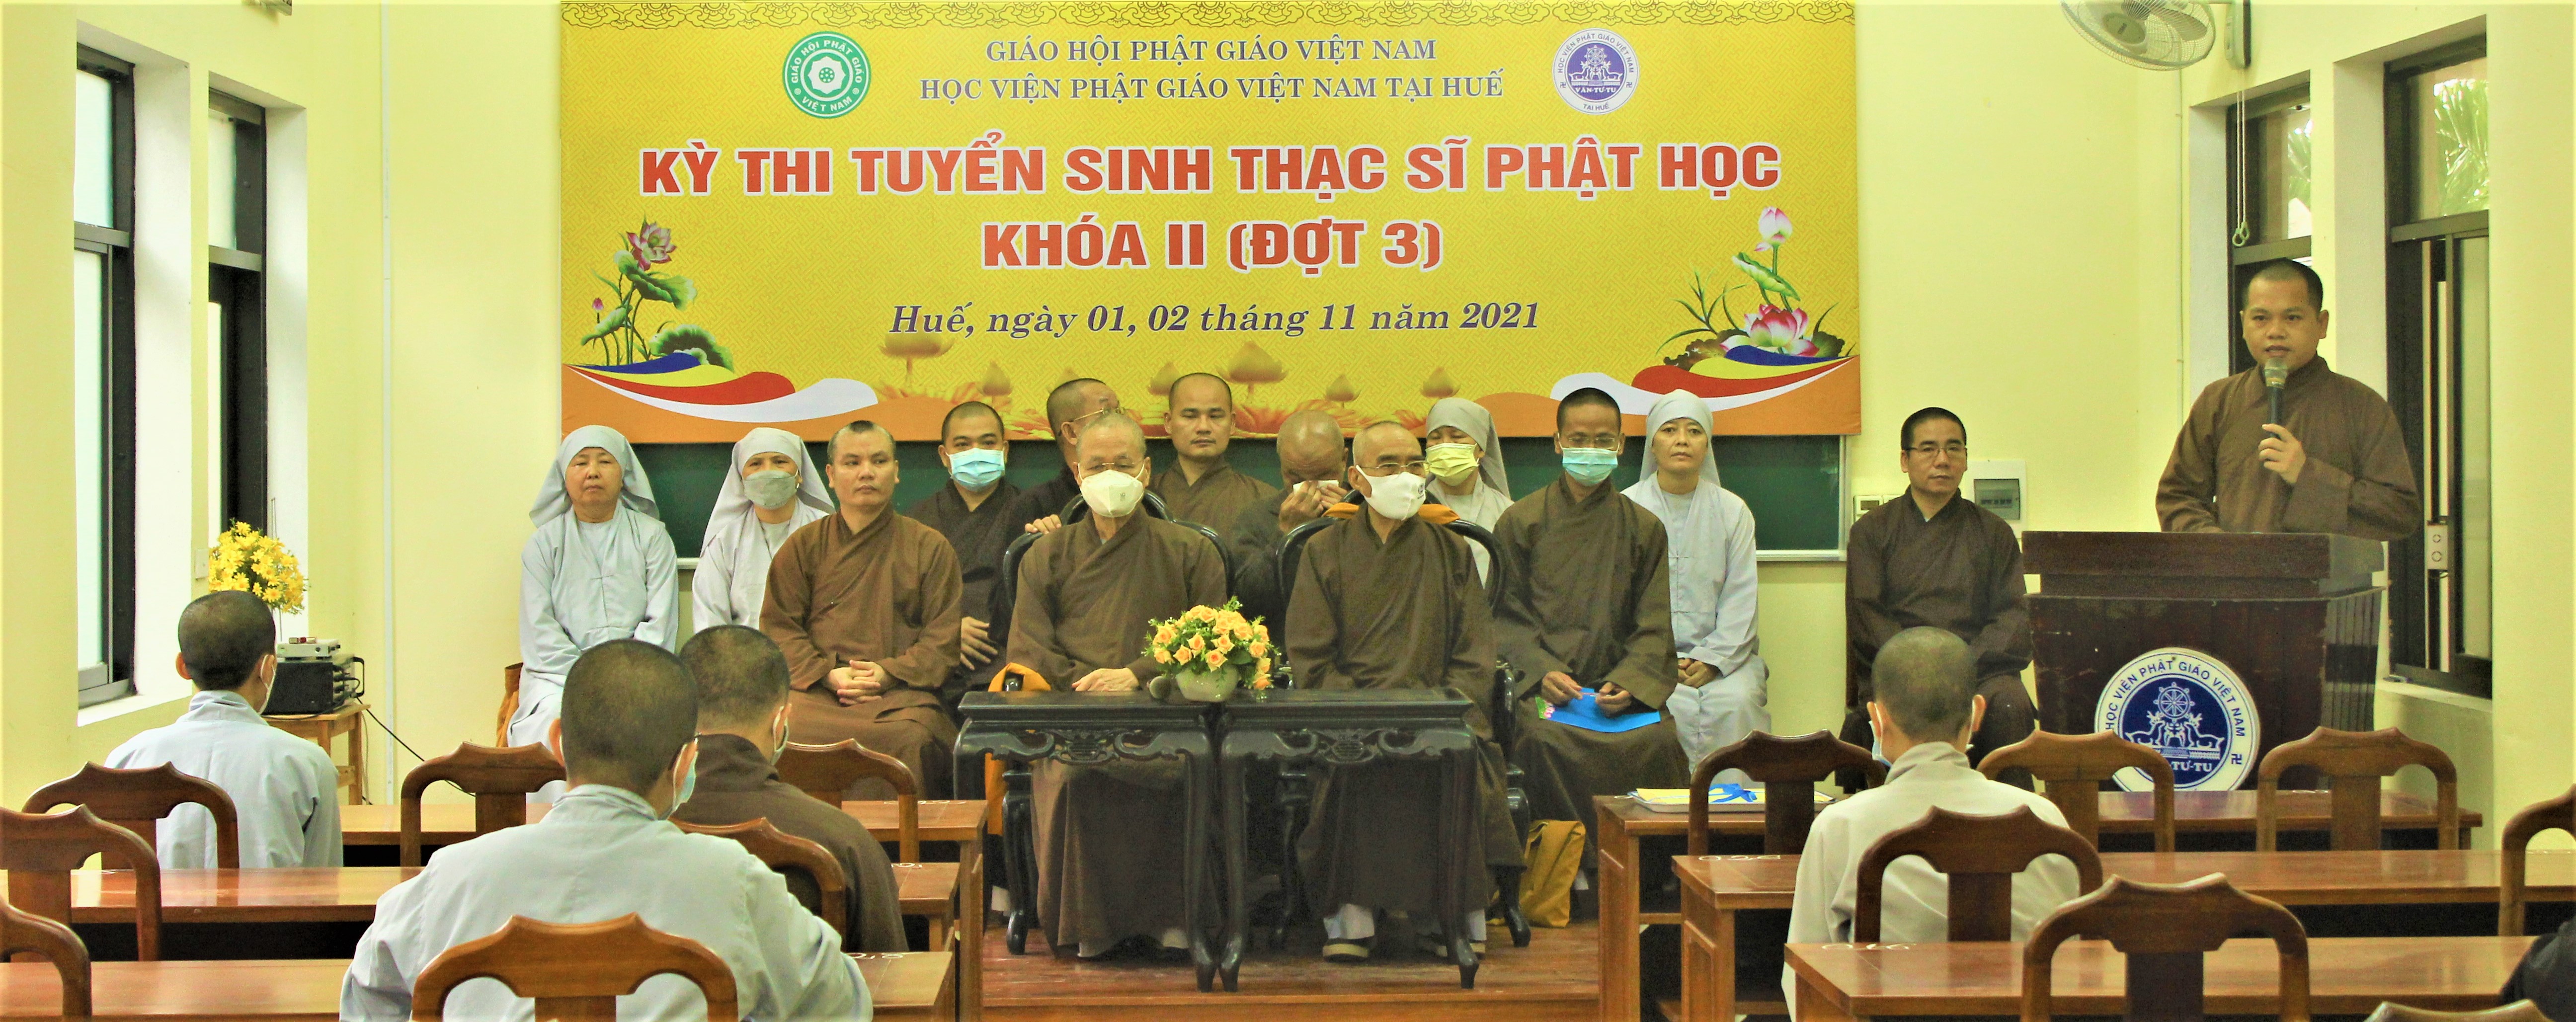 Học viện PGVN tại Huế tổ chức thi tuyển sinh Thạc sĩ Phật học khoá II (đợt 3)